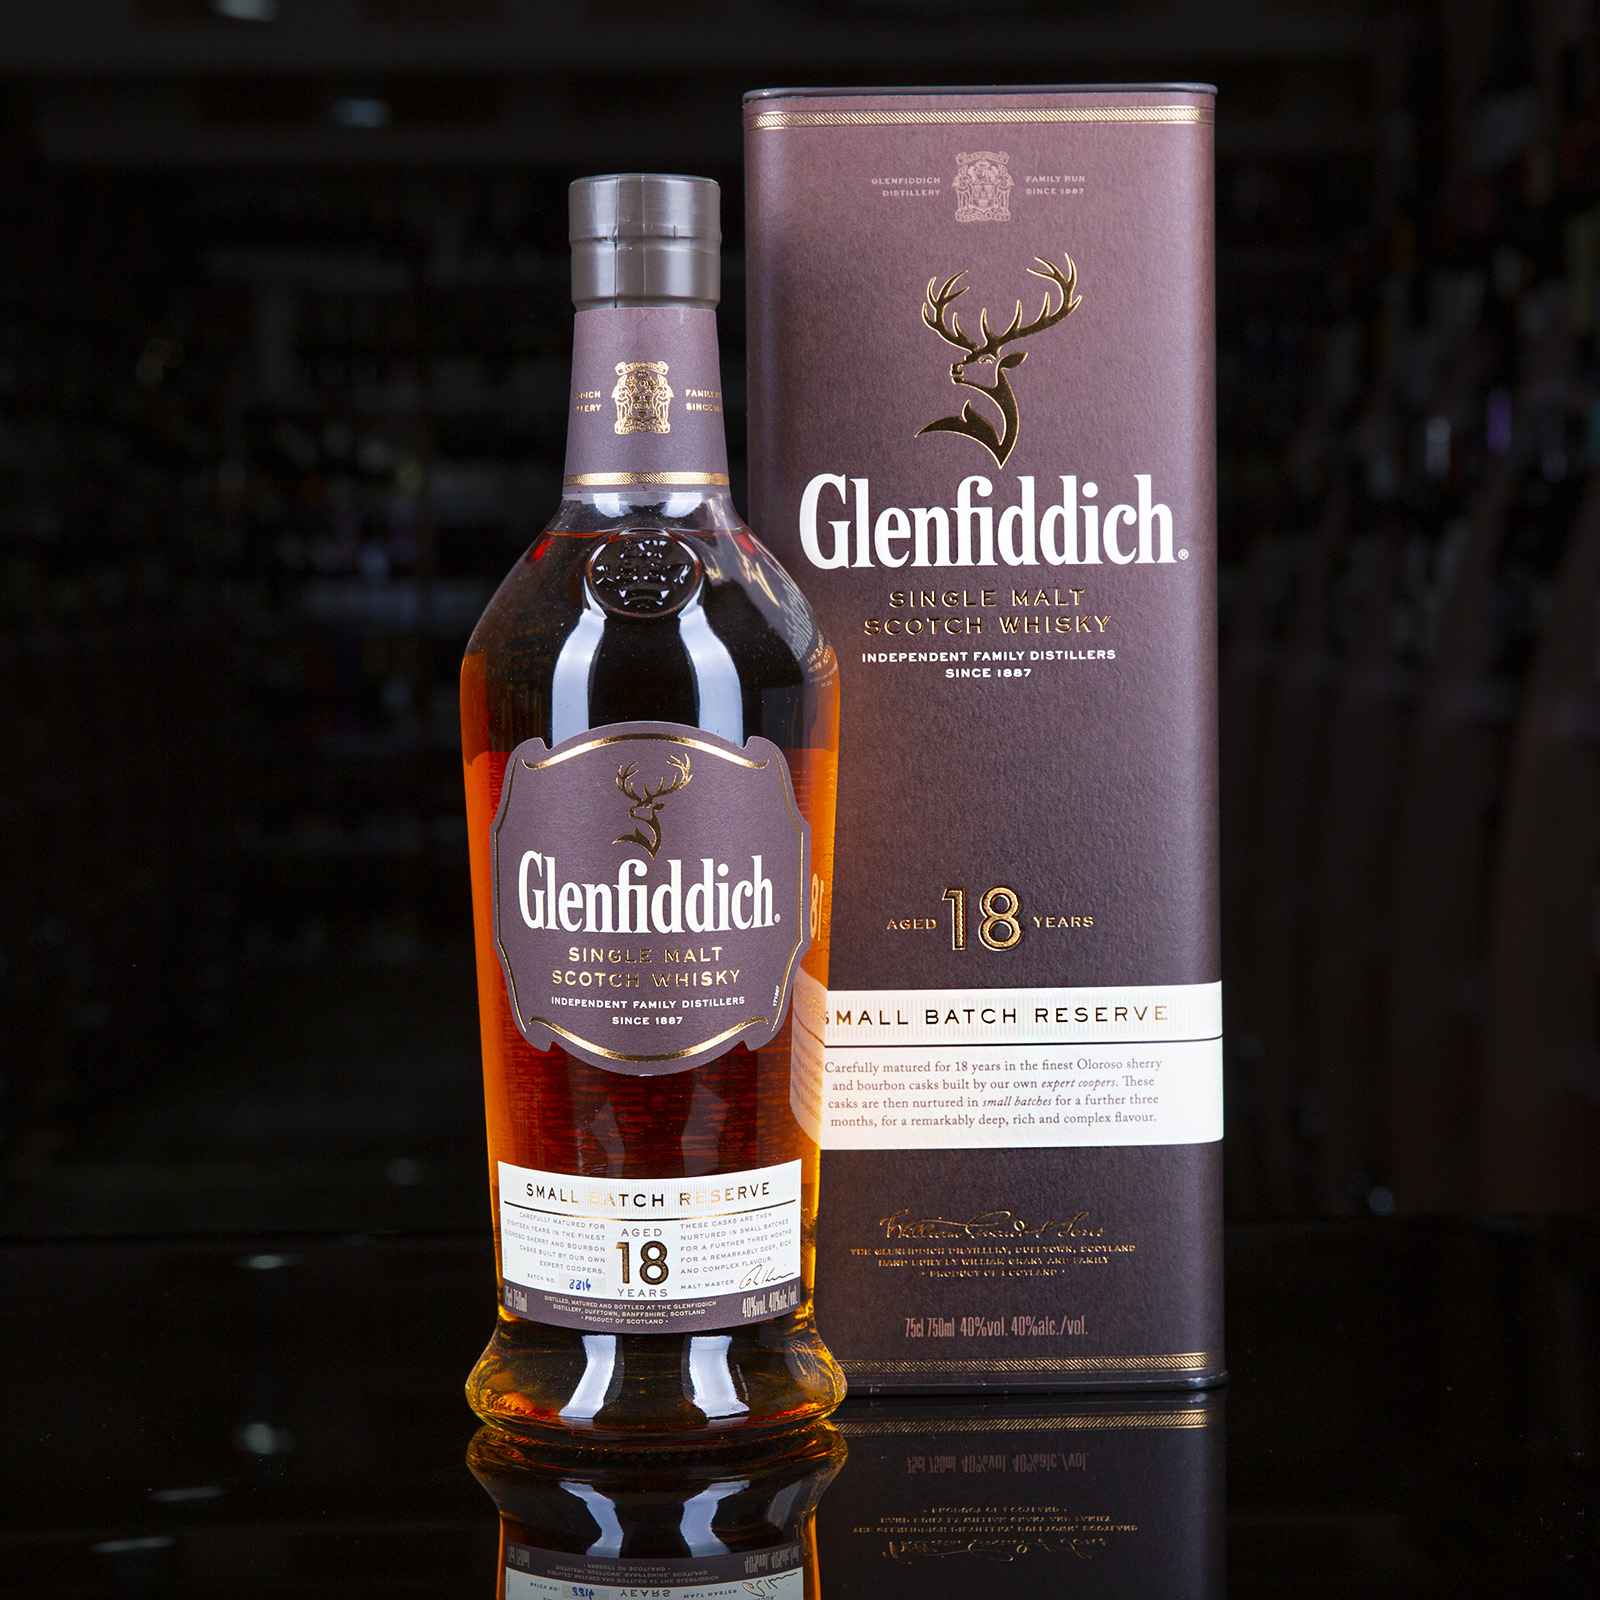 Гленфиддик 18. Виски Гленфиддич 18. Glenfiddich Single Malt 18.